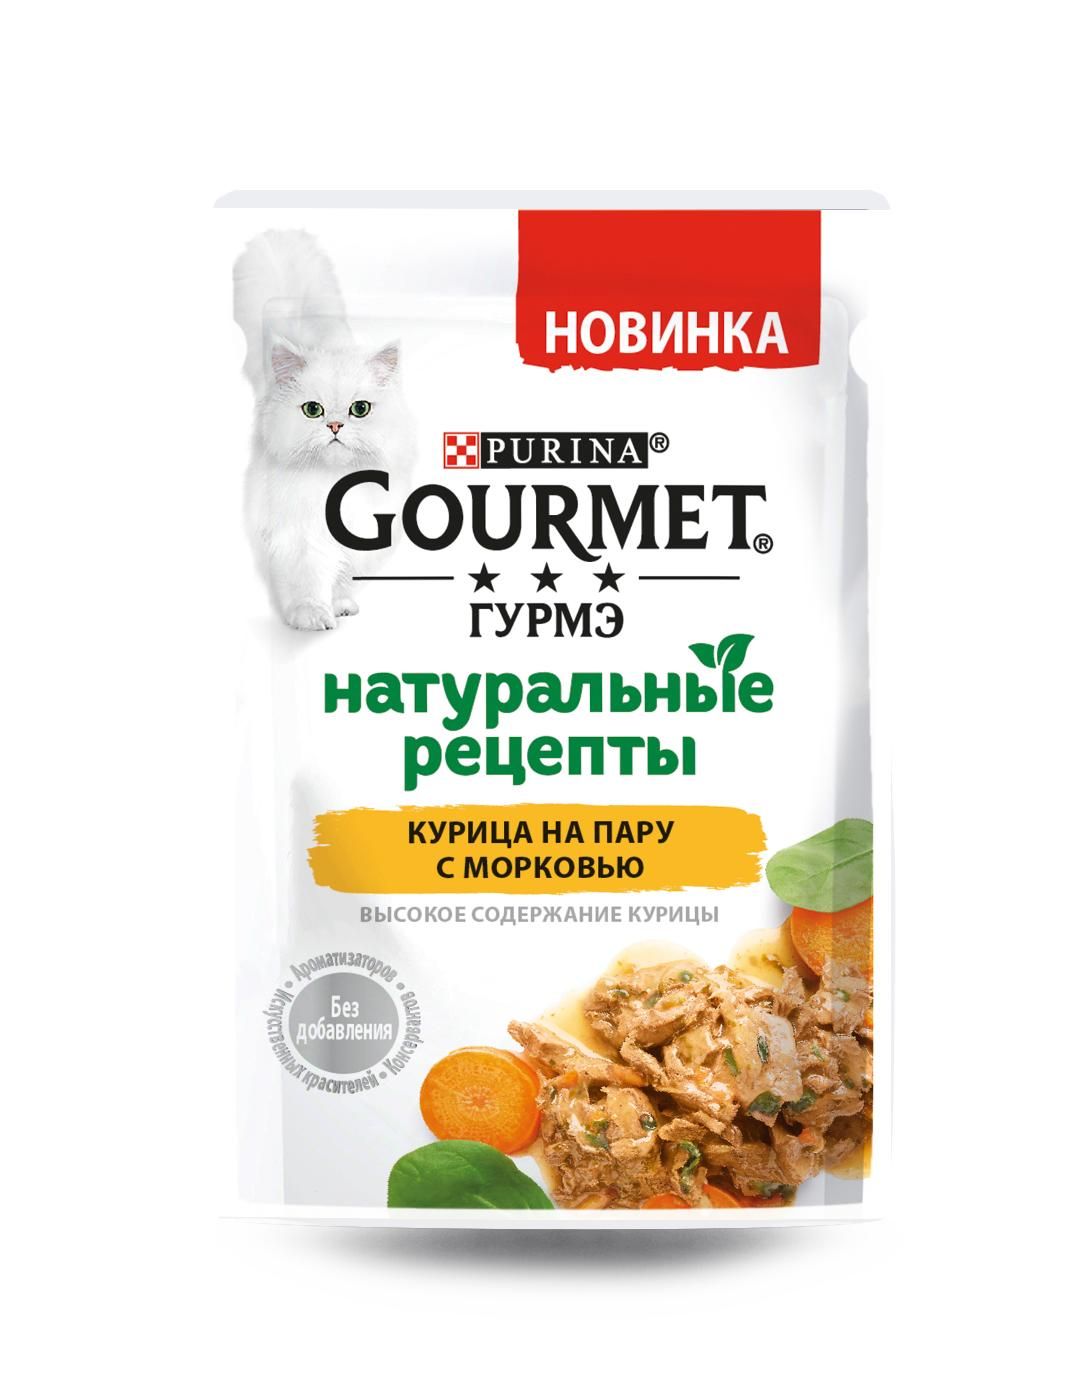 Гурме 75гр Натуральные рецепты - Курица/Морковь (Gourmet)